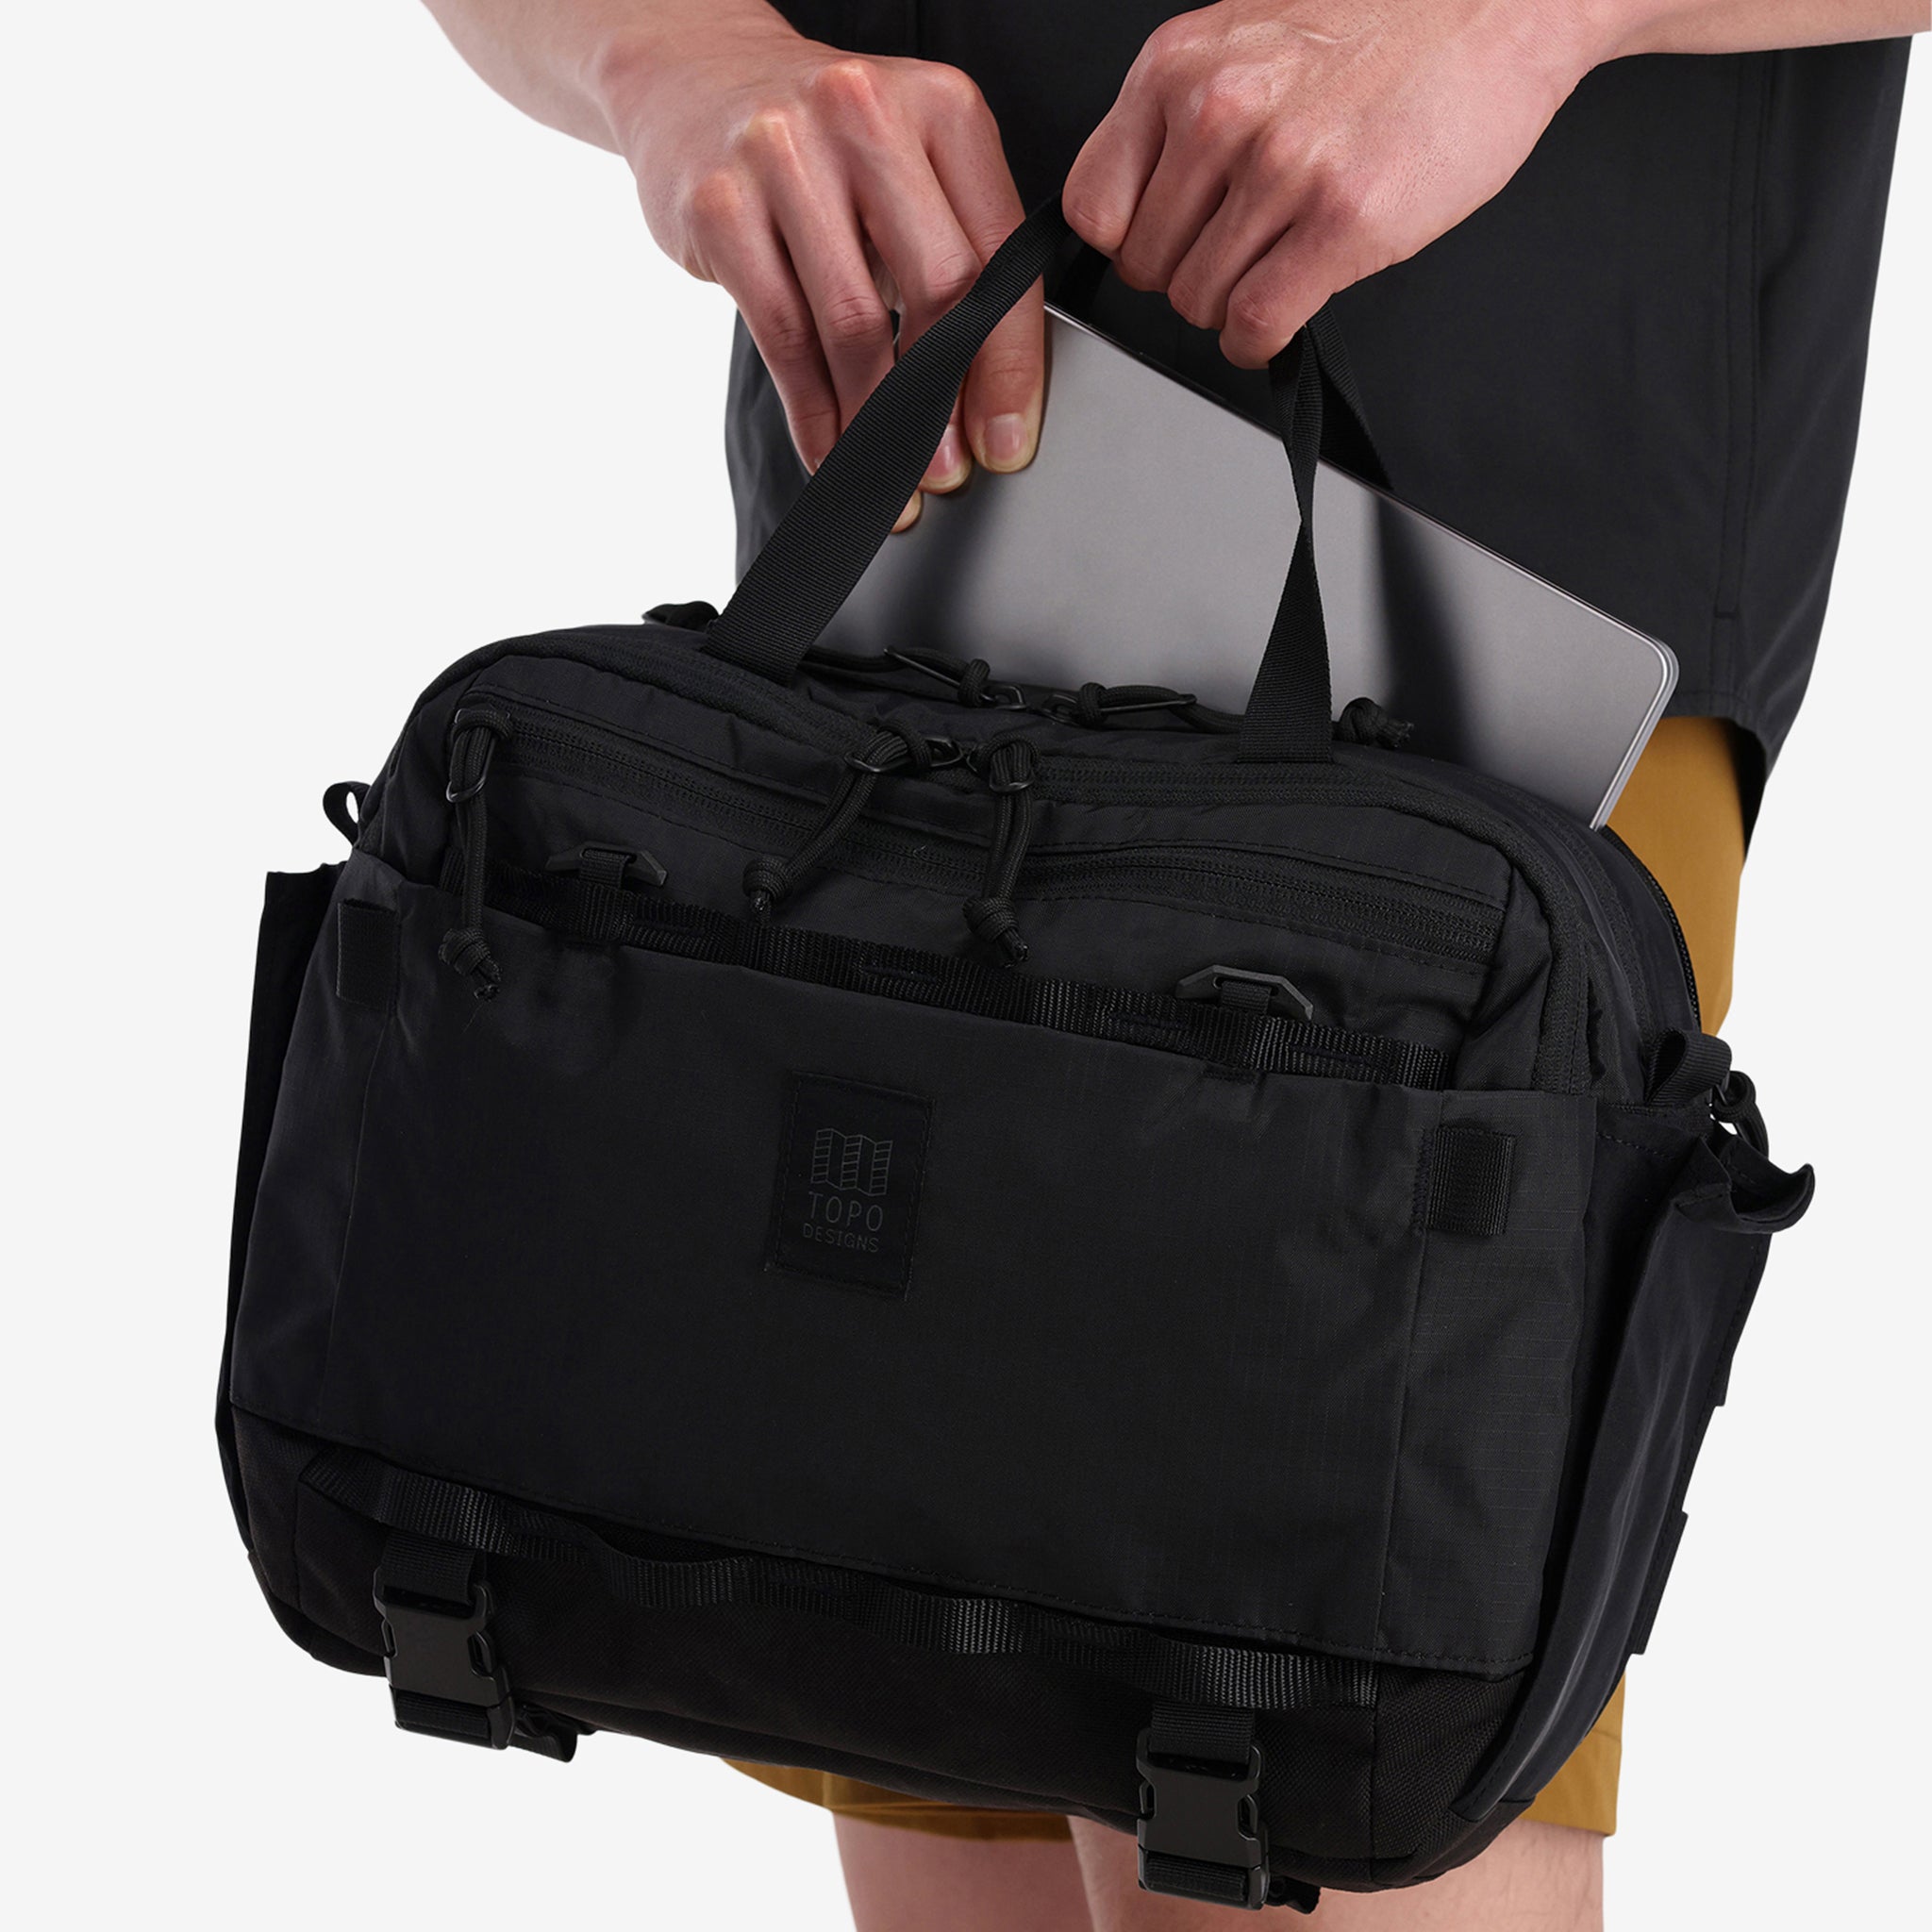 Topo Designs Mountain Sling Bag Black/Blue, Cross-over pack